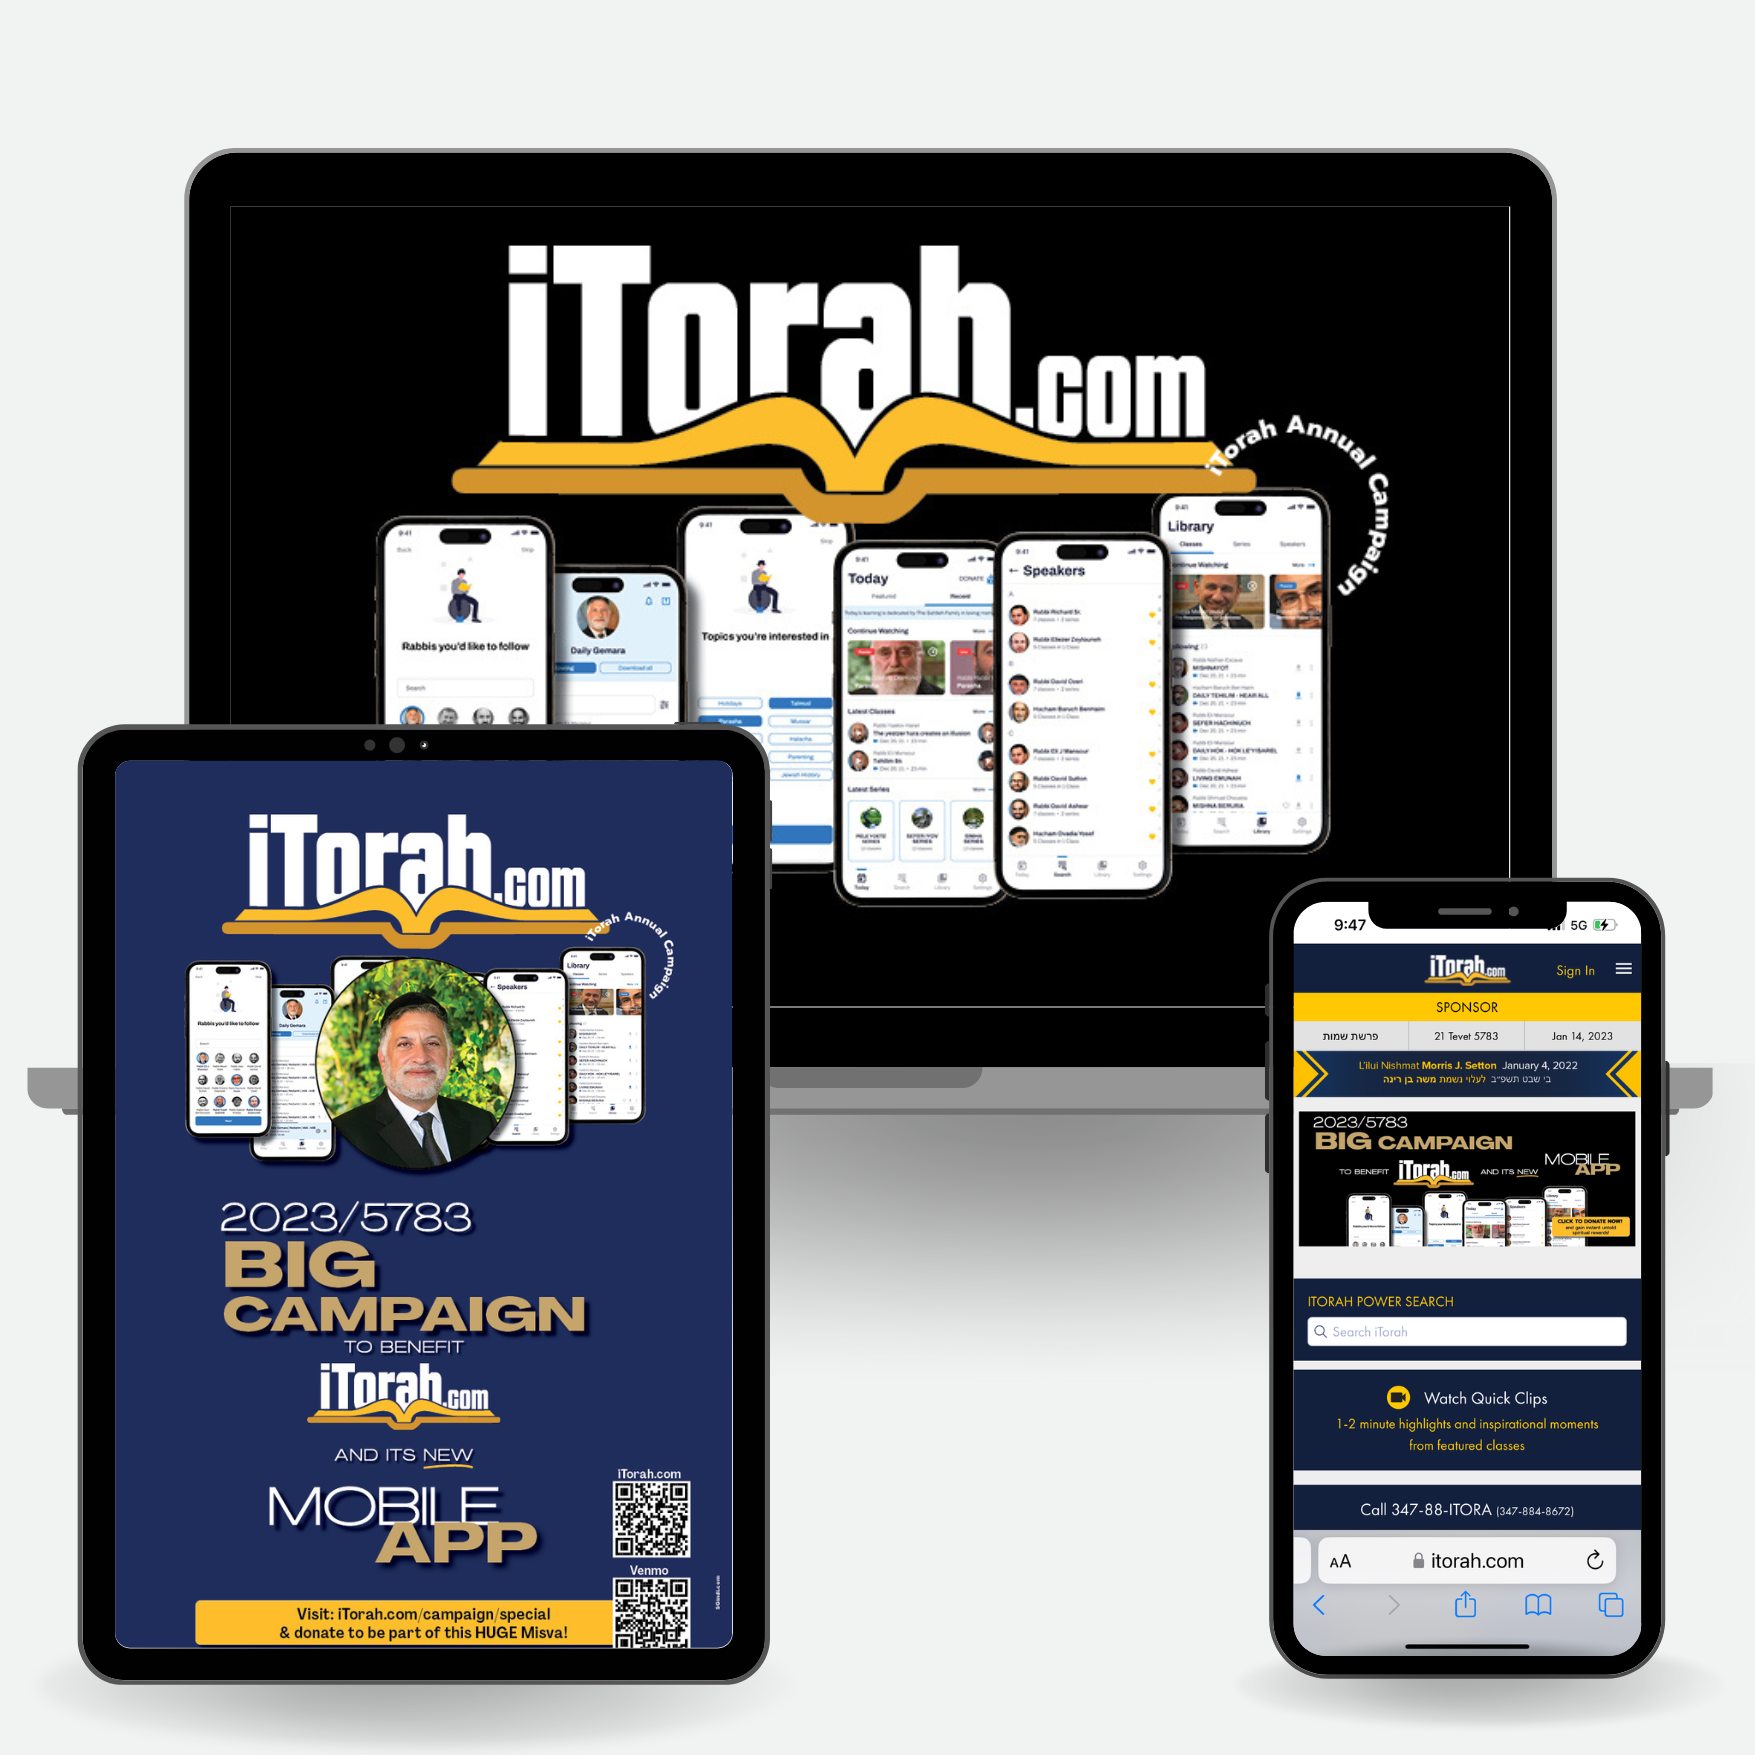 iTorah.com - Social Media Campaign